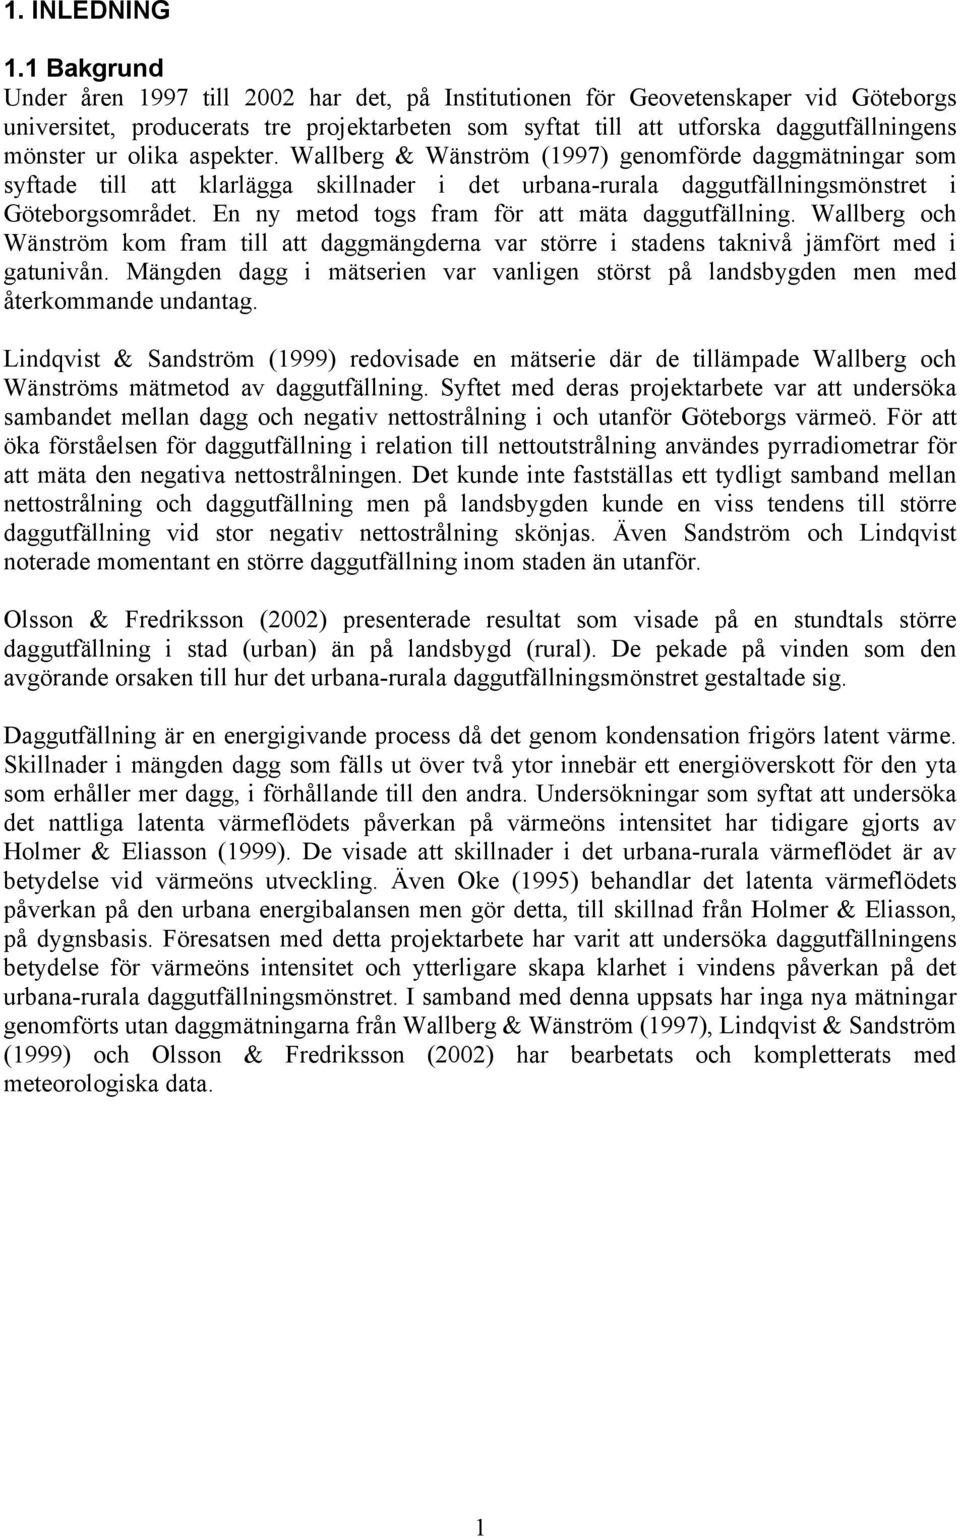 olika aspekter. Wallberg & Wänström (1997) genomförde daggmätningar som syftade till att klarlägga skillnader i det urbana-rurala daggutfällningsmönstret i Göteborgsområdet.